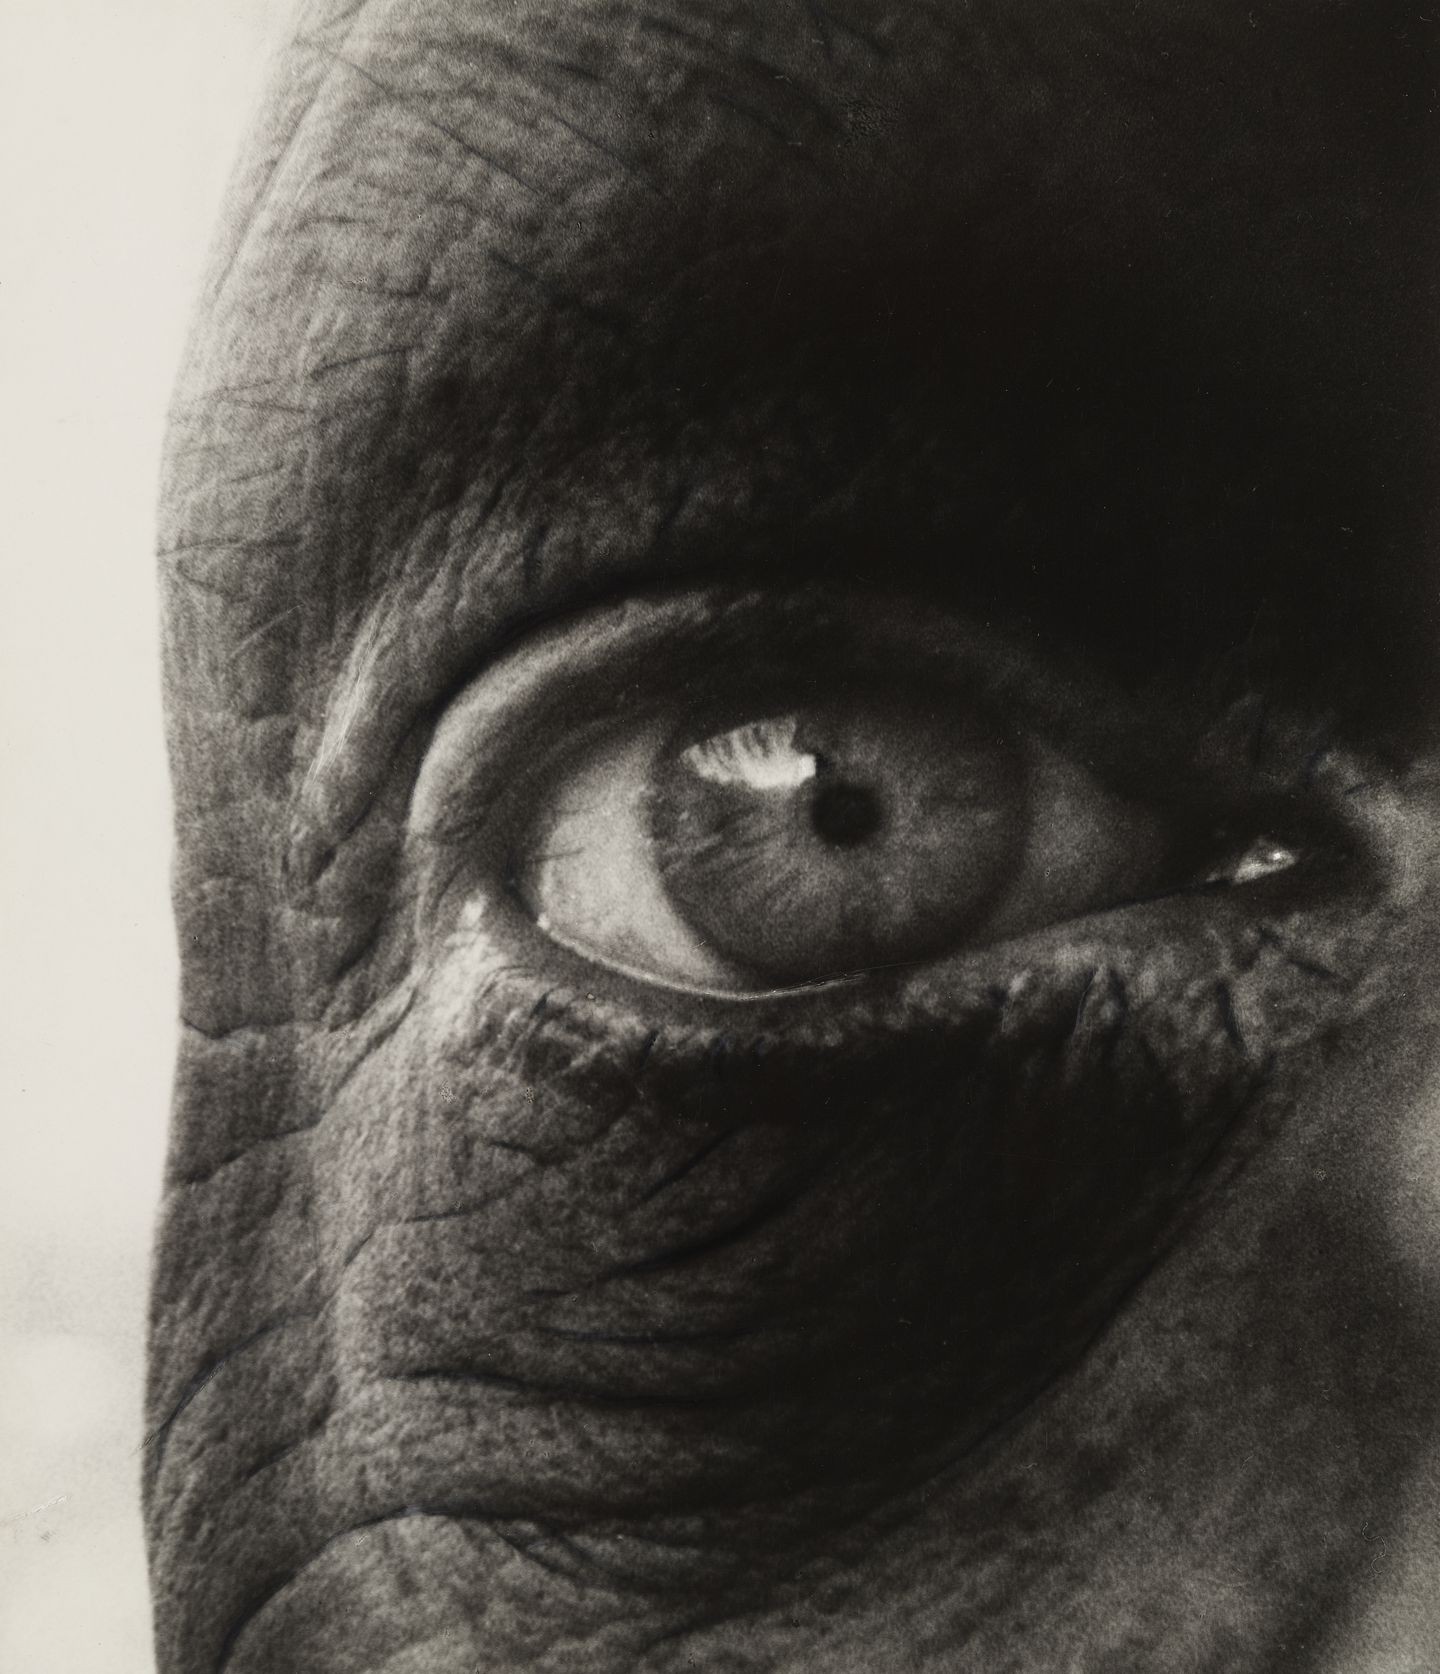 Жан Дюбюффе, 1960. Фотограф Билл Брандт